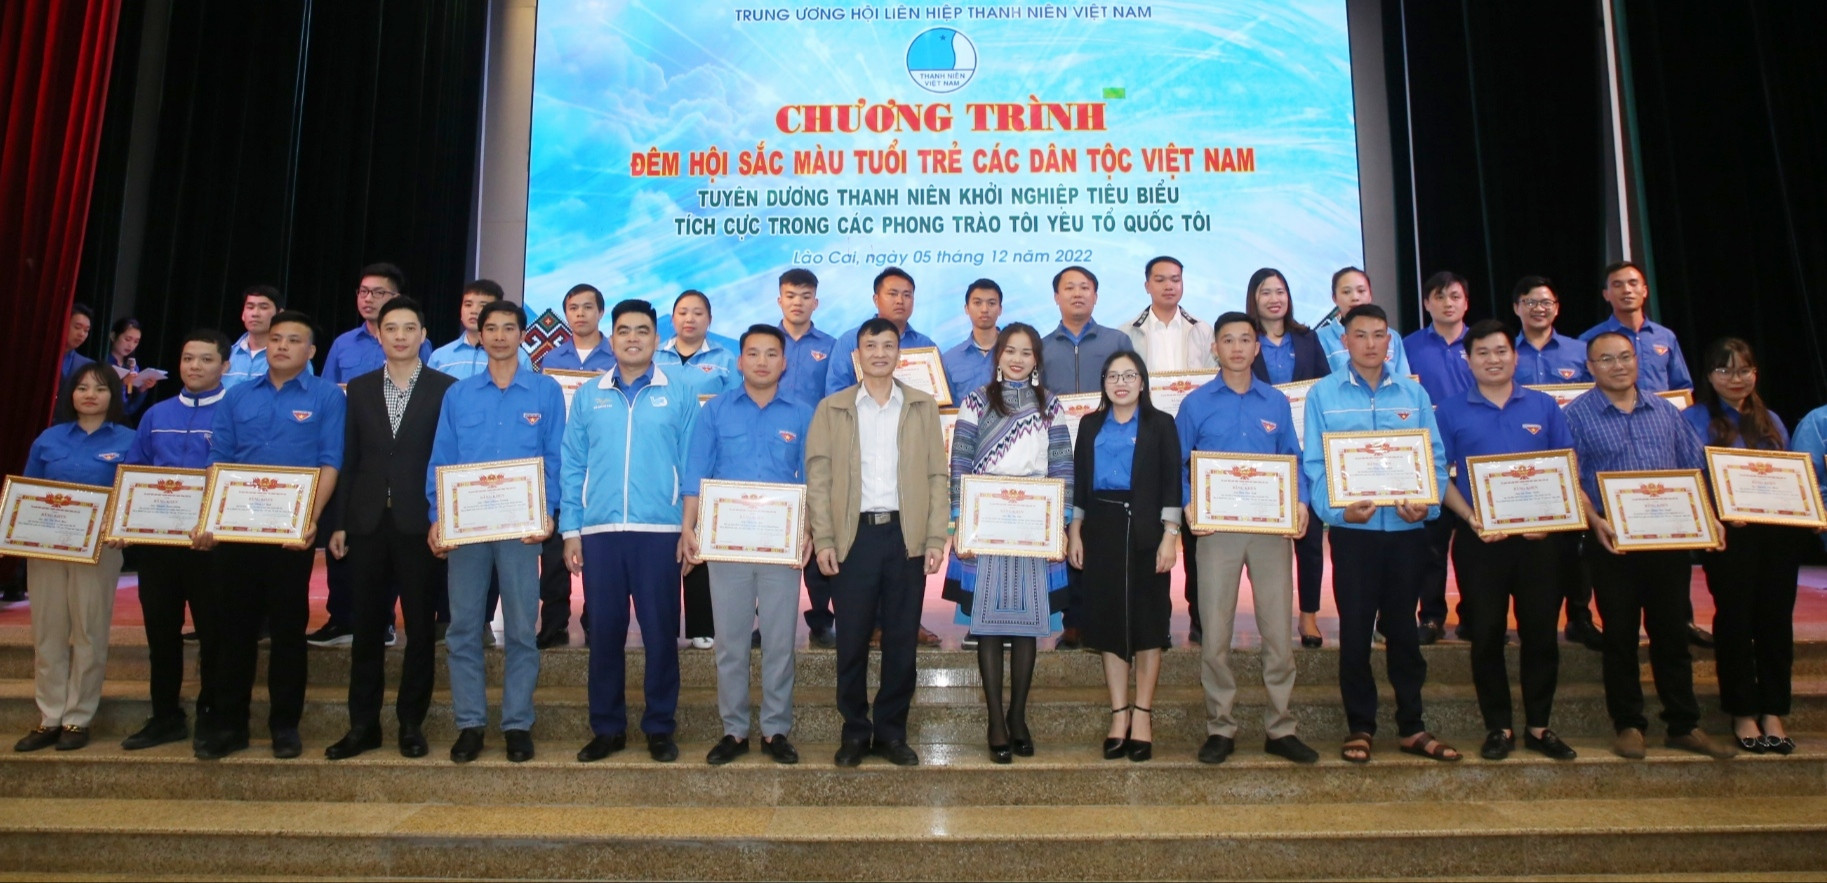 27 thanh niên dân tộc thiểu số tiêu biểu được tuyên dương trong Đêm hội sắc màu tuổi trẻ các dân tộc Việt Nam ảnh 1